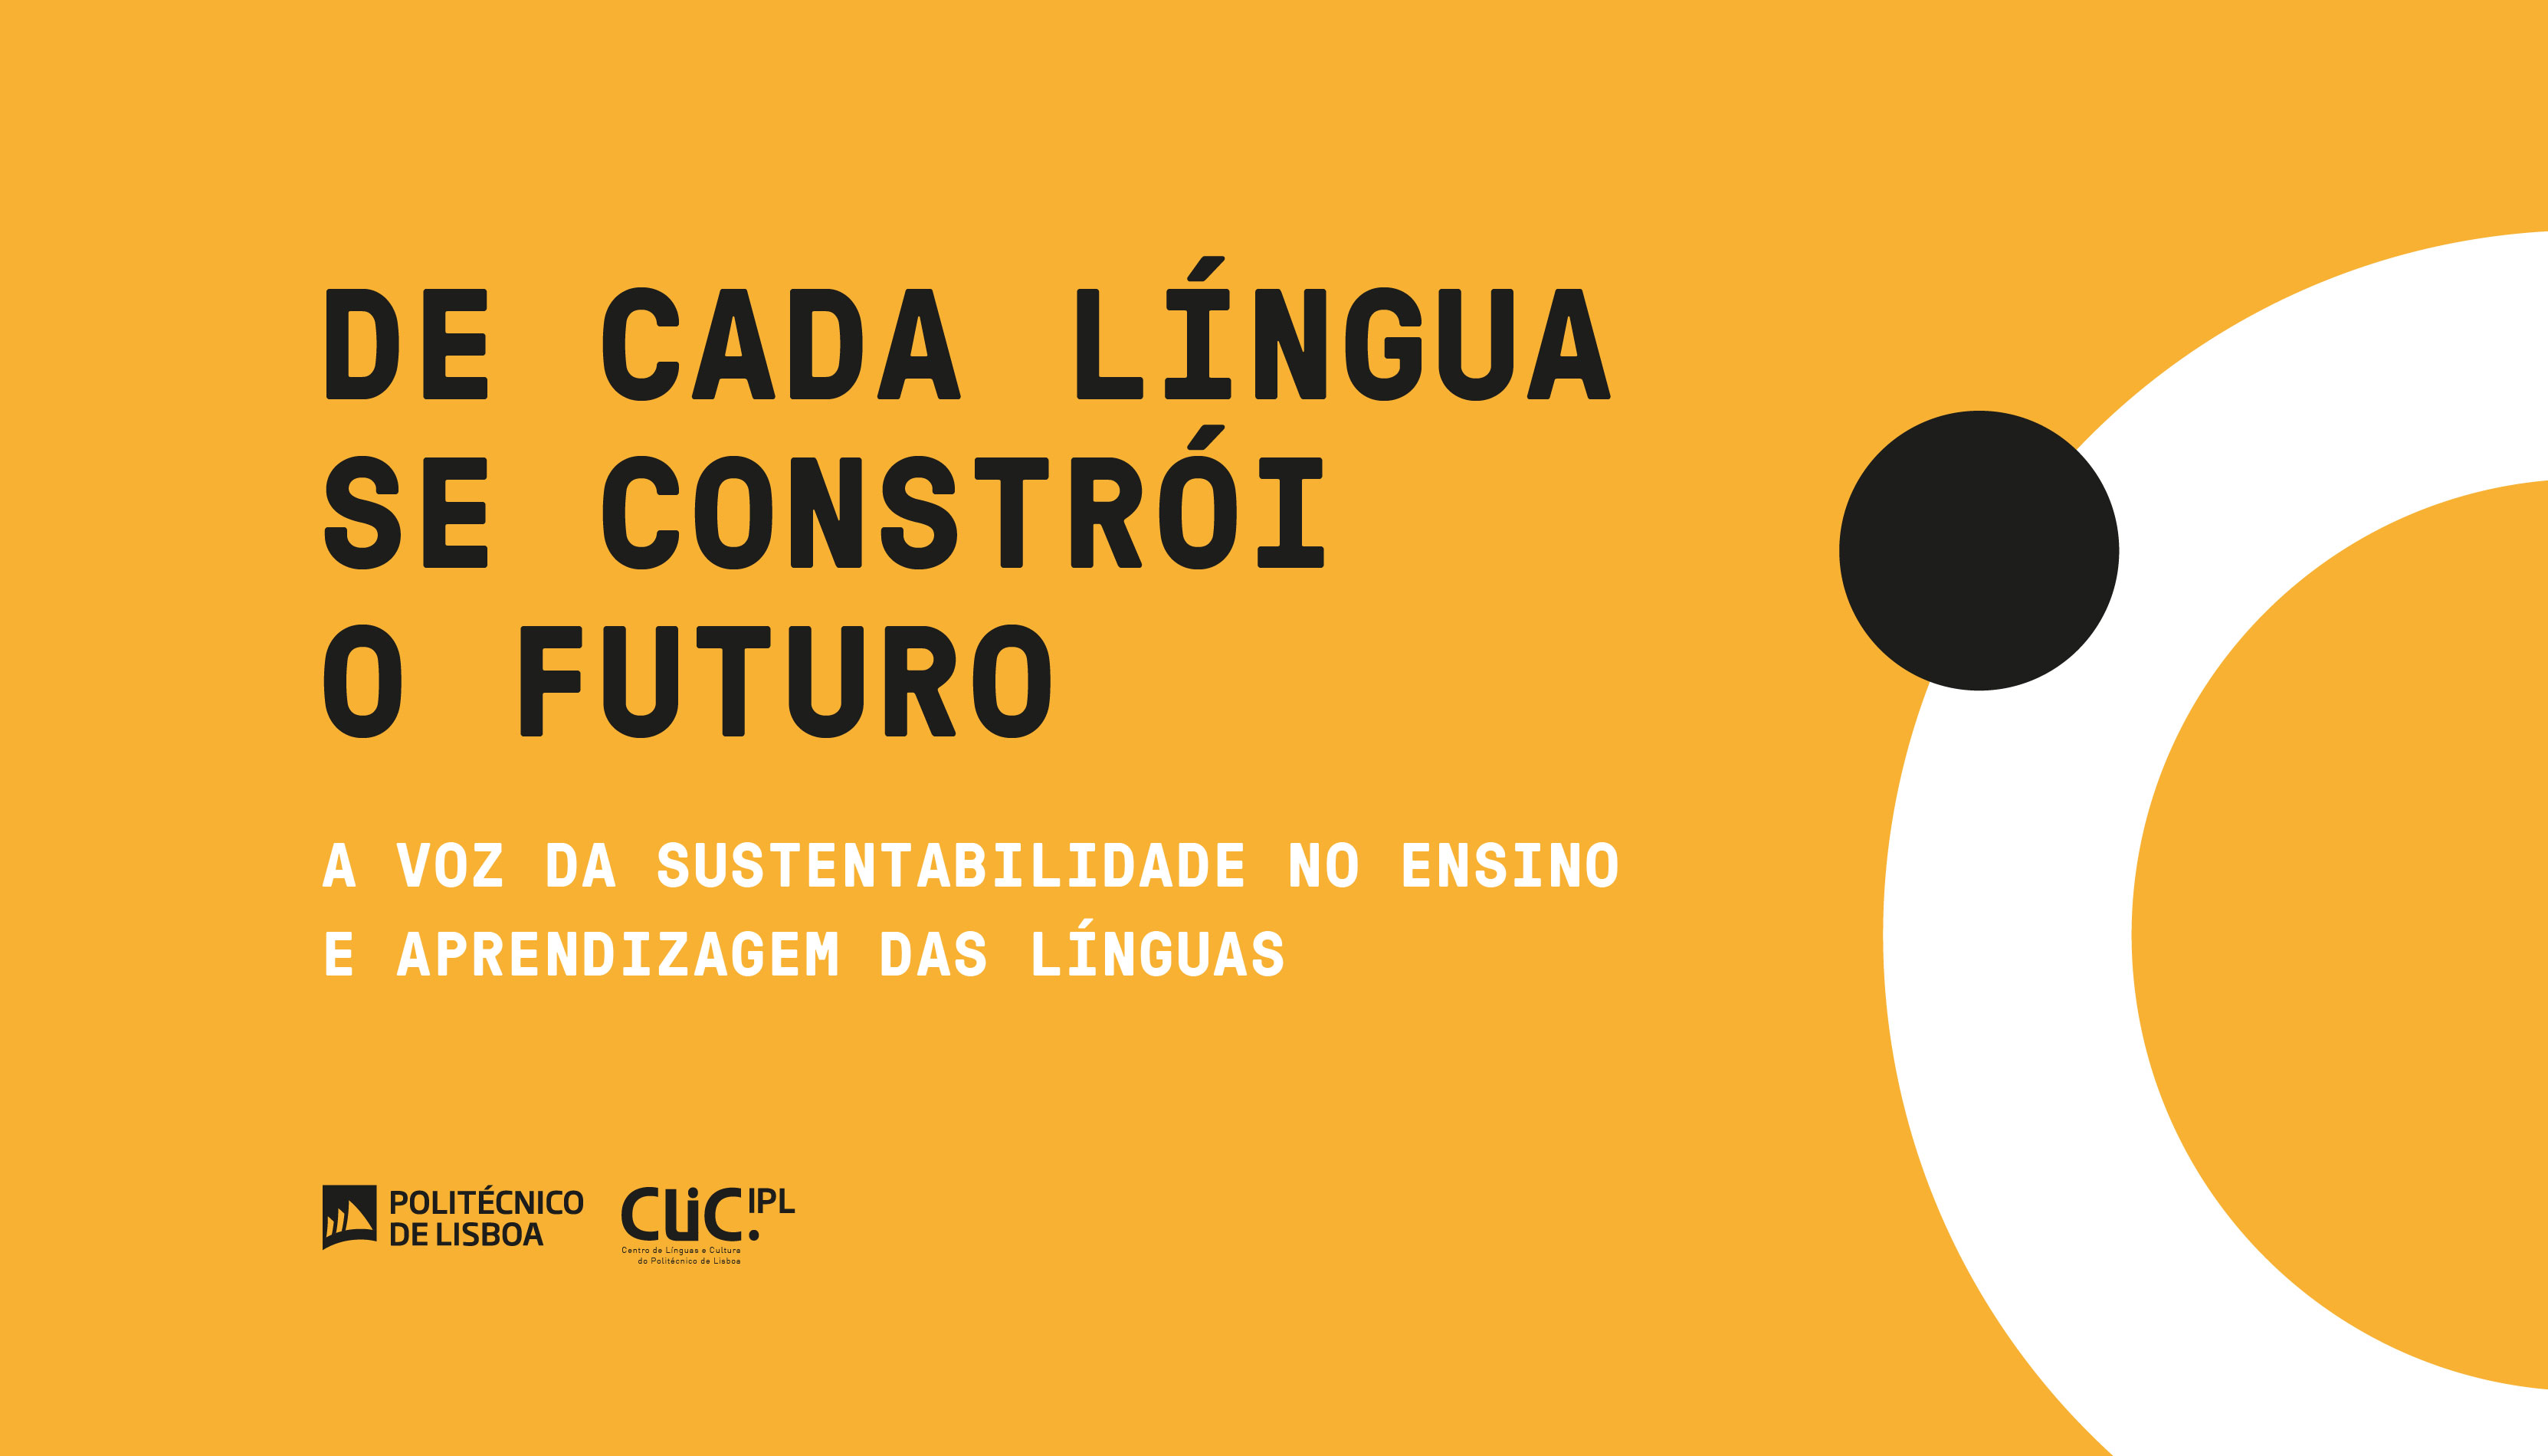 De cada língua se constrói o futuro - a voz da sustentabilidade no ensino e aprendizagem das línguas